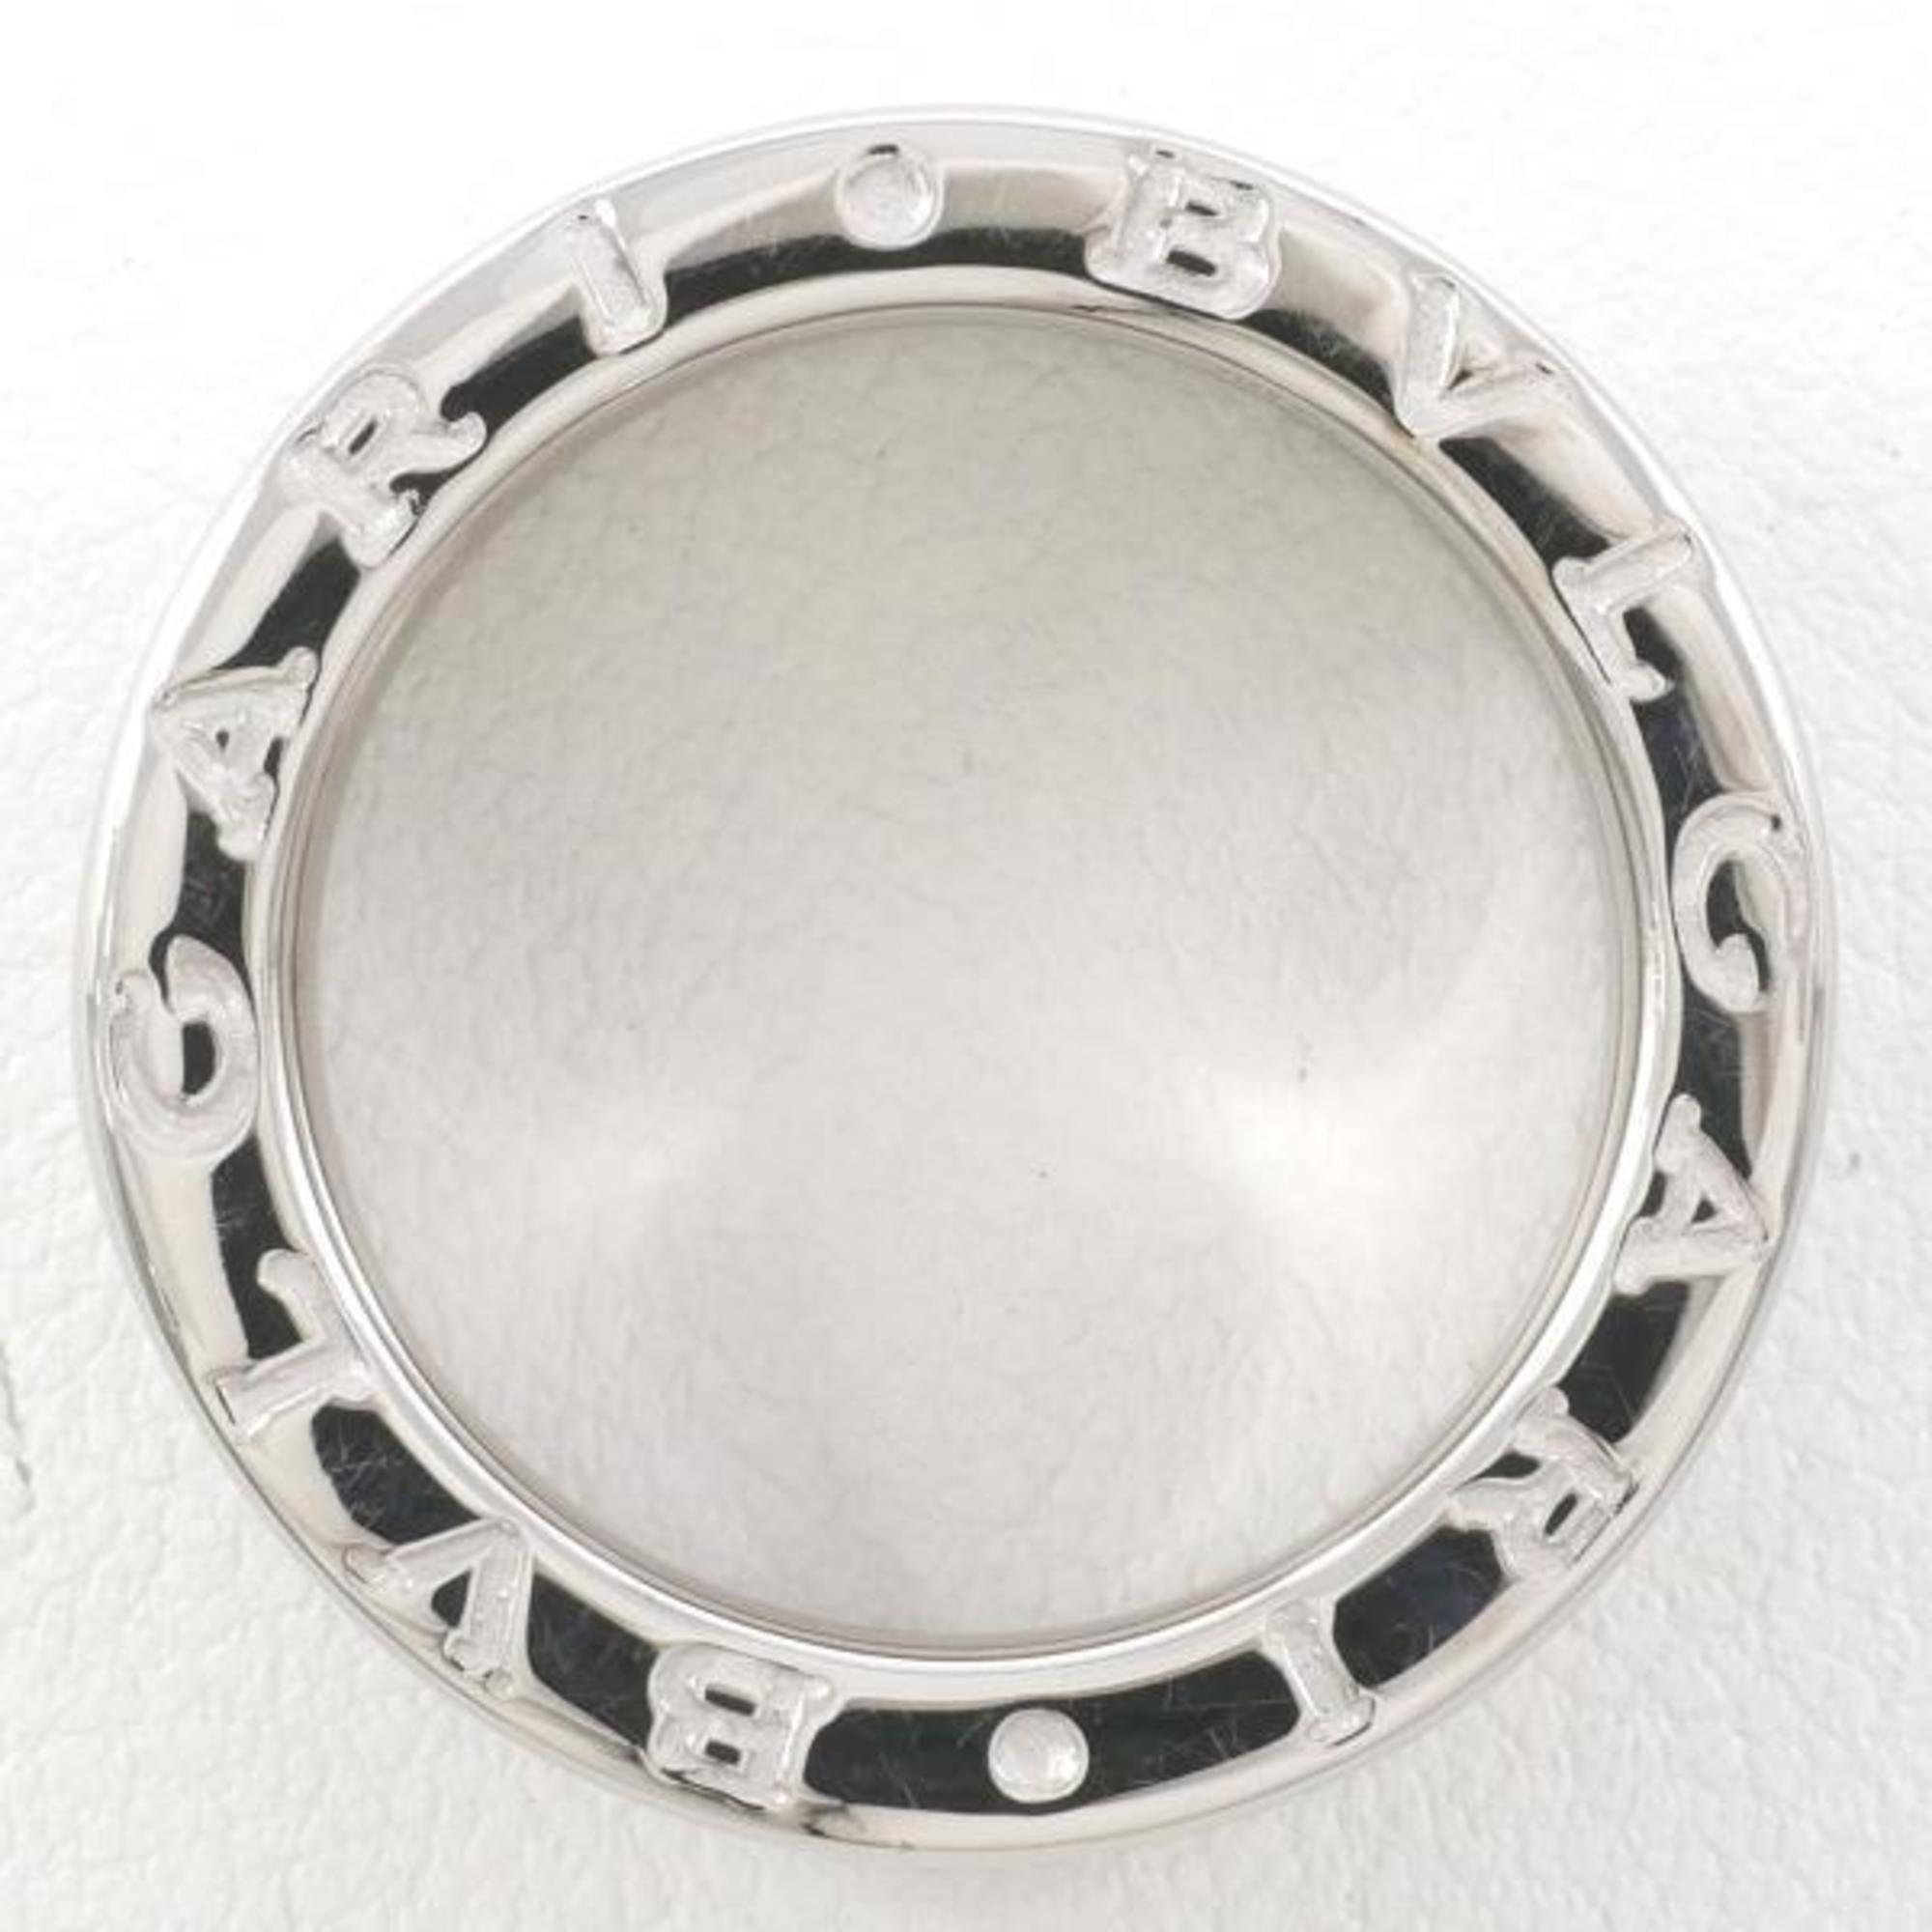 Bvlgari B Zero One K18WG Ring Total Weight Approx. 8.3g Jewelry